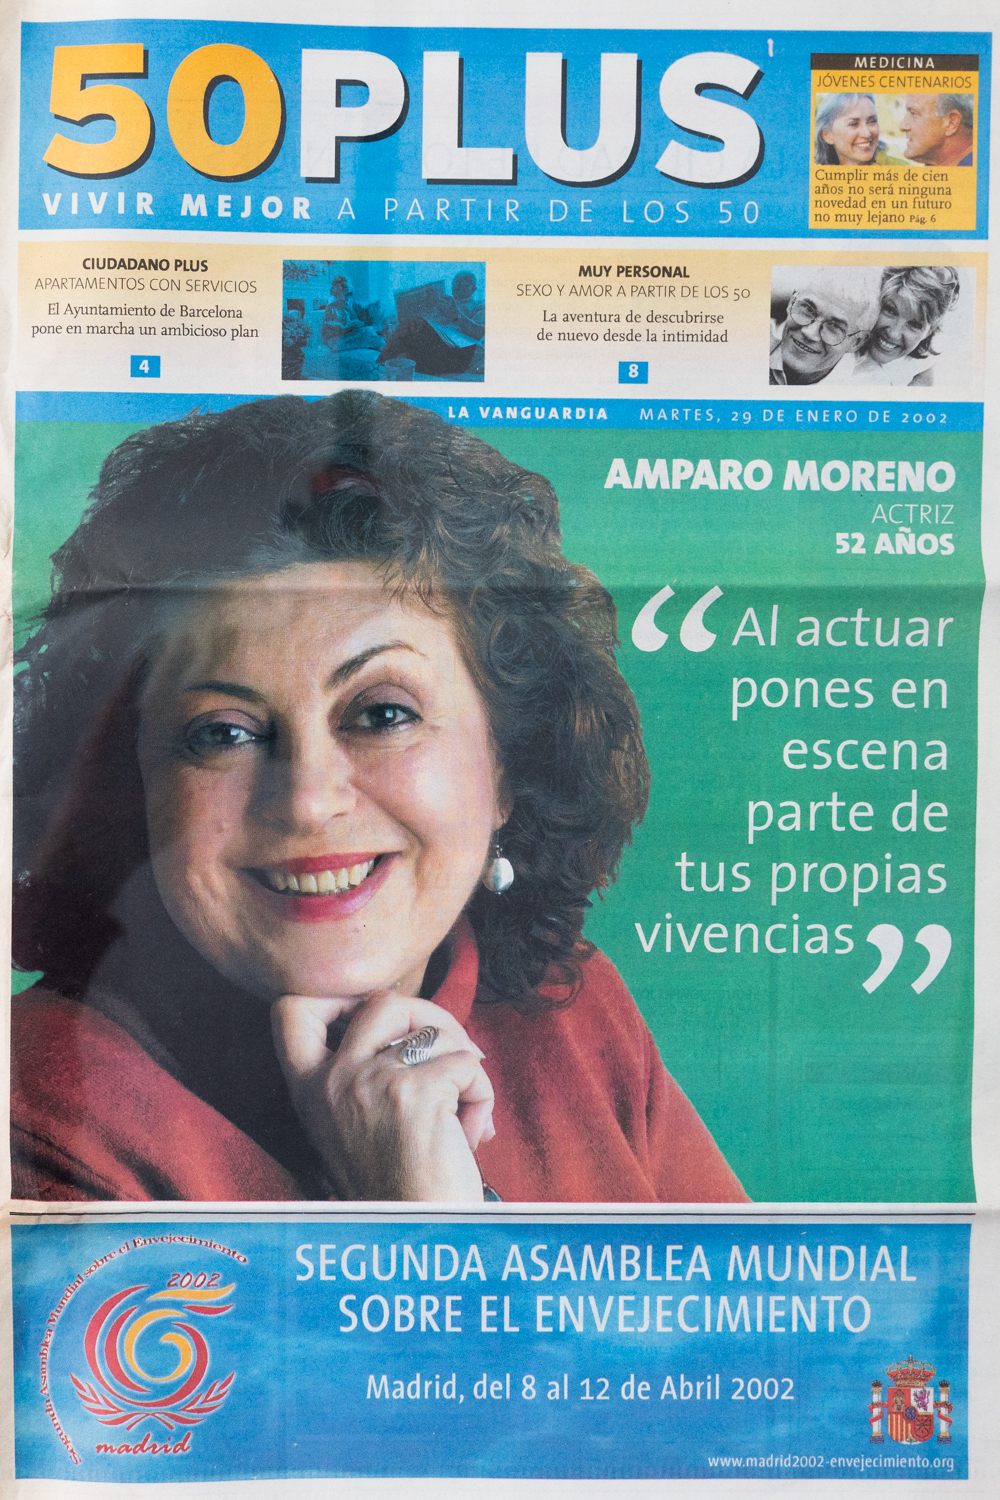 Amparo Moreno- Altas dosis de buen humor en estado puro. Suplemento monográfico La Vanguardia. Enero 2002. -1